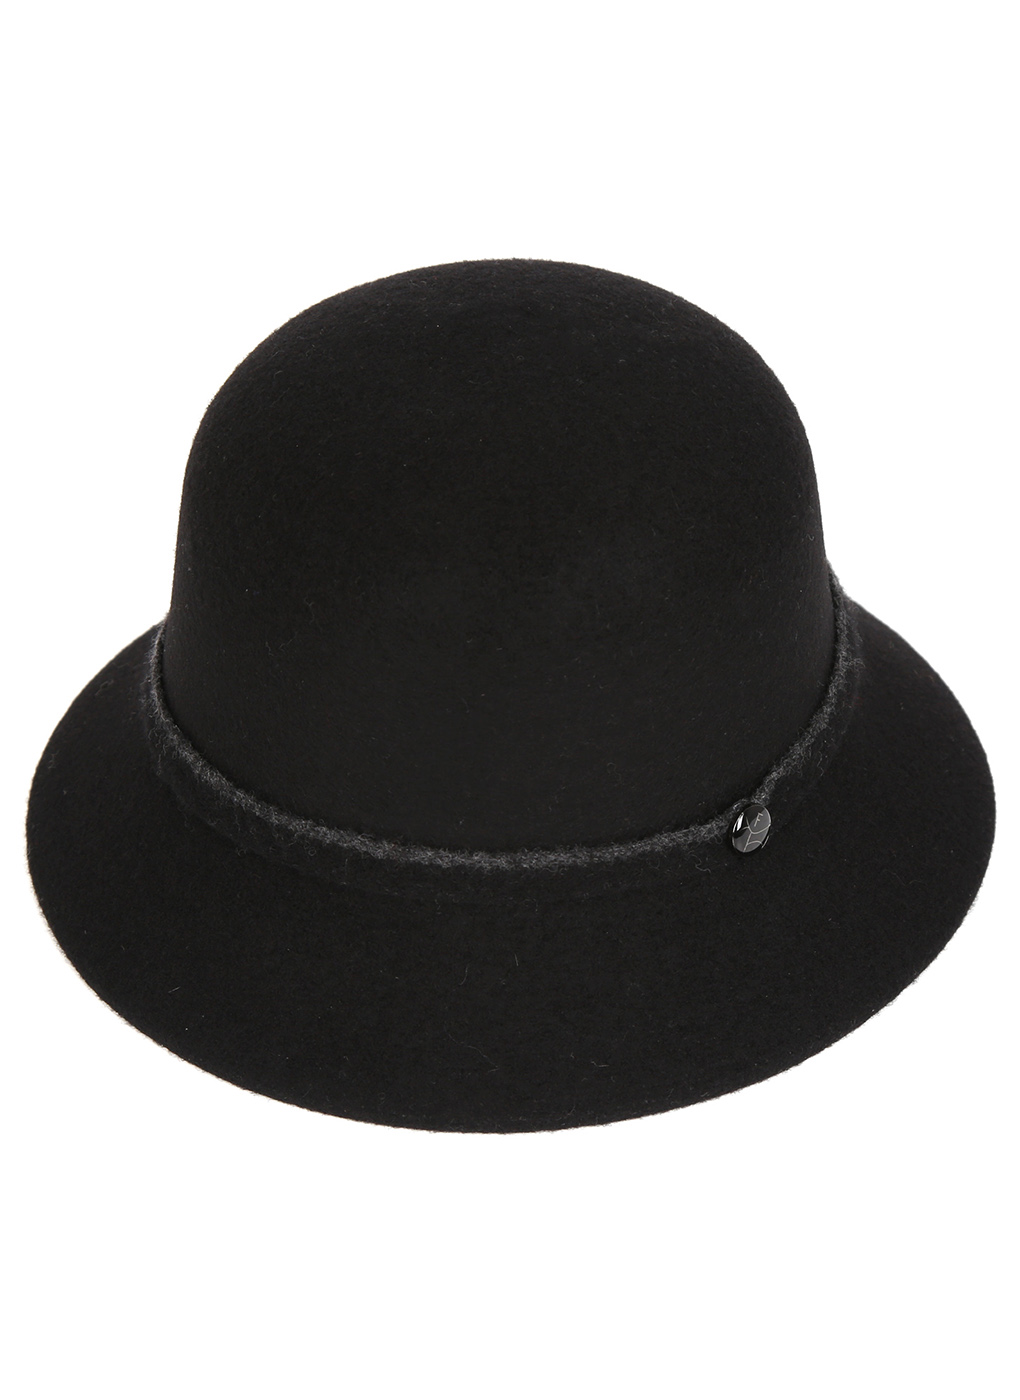 Шляпа женская Каляев 56002 черная, р. 57